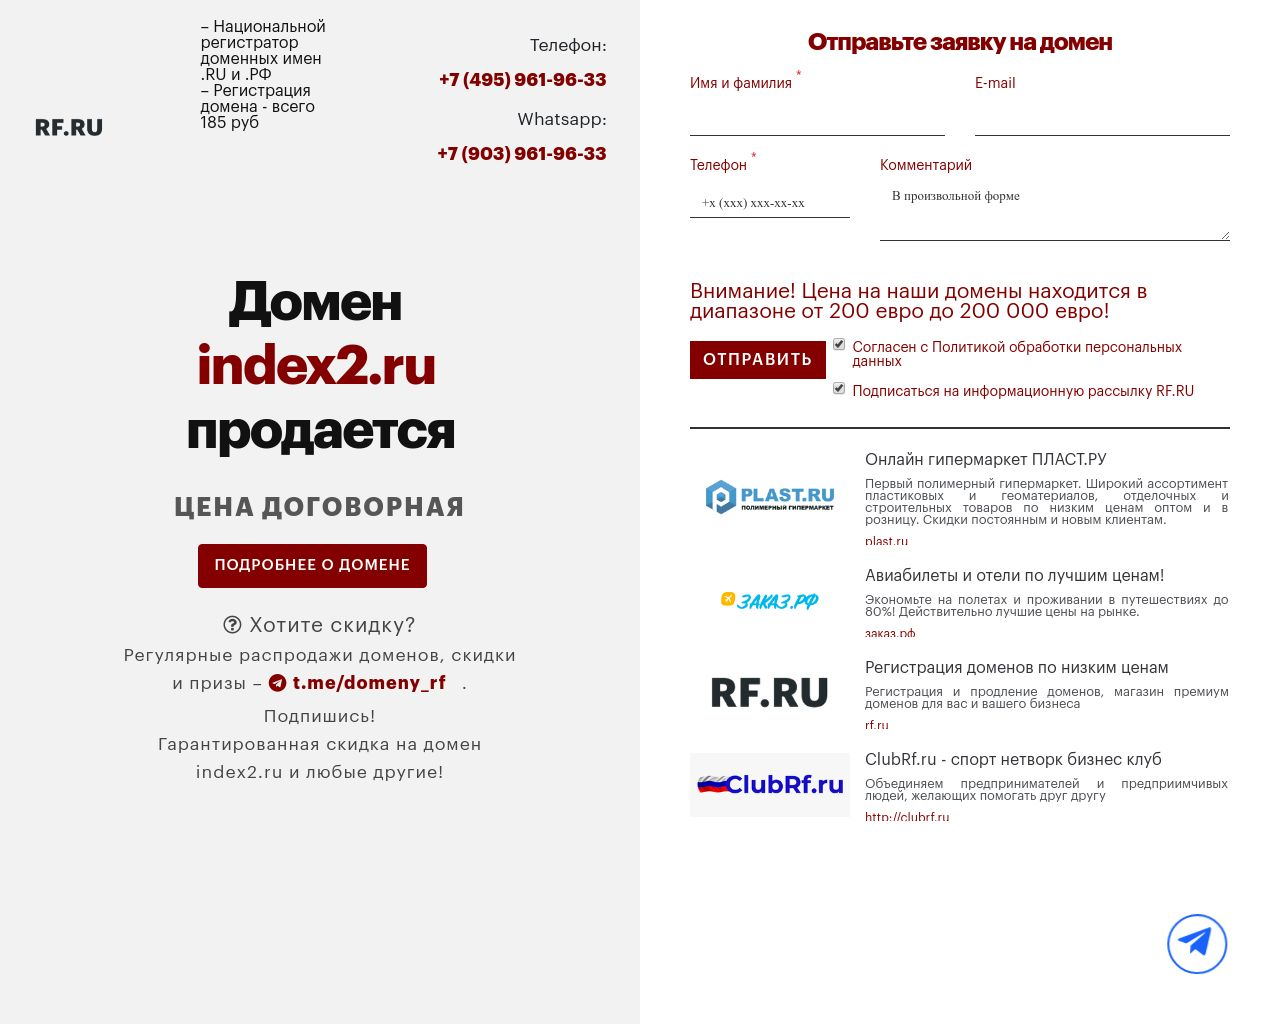 Изображение сайта index2.ru в разрешении 1280x1024